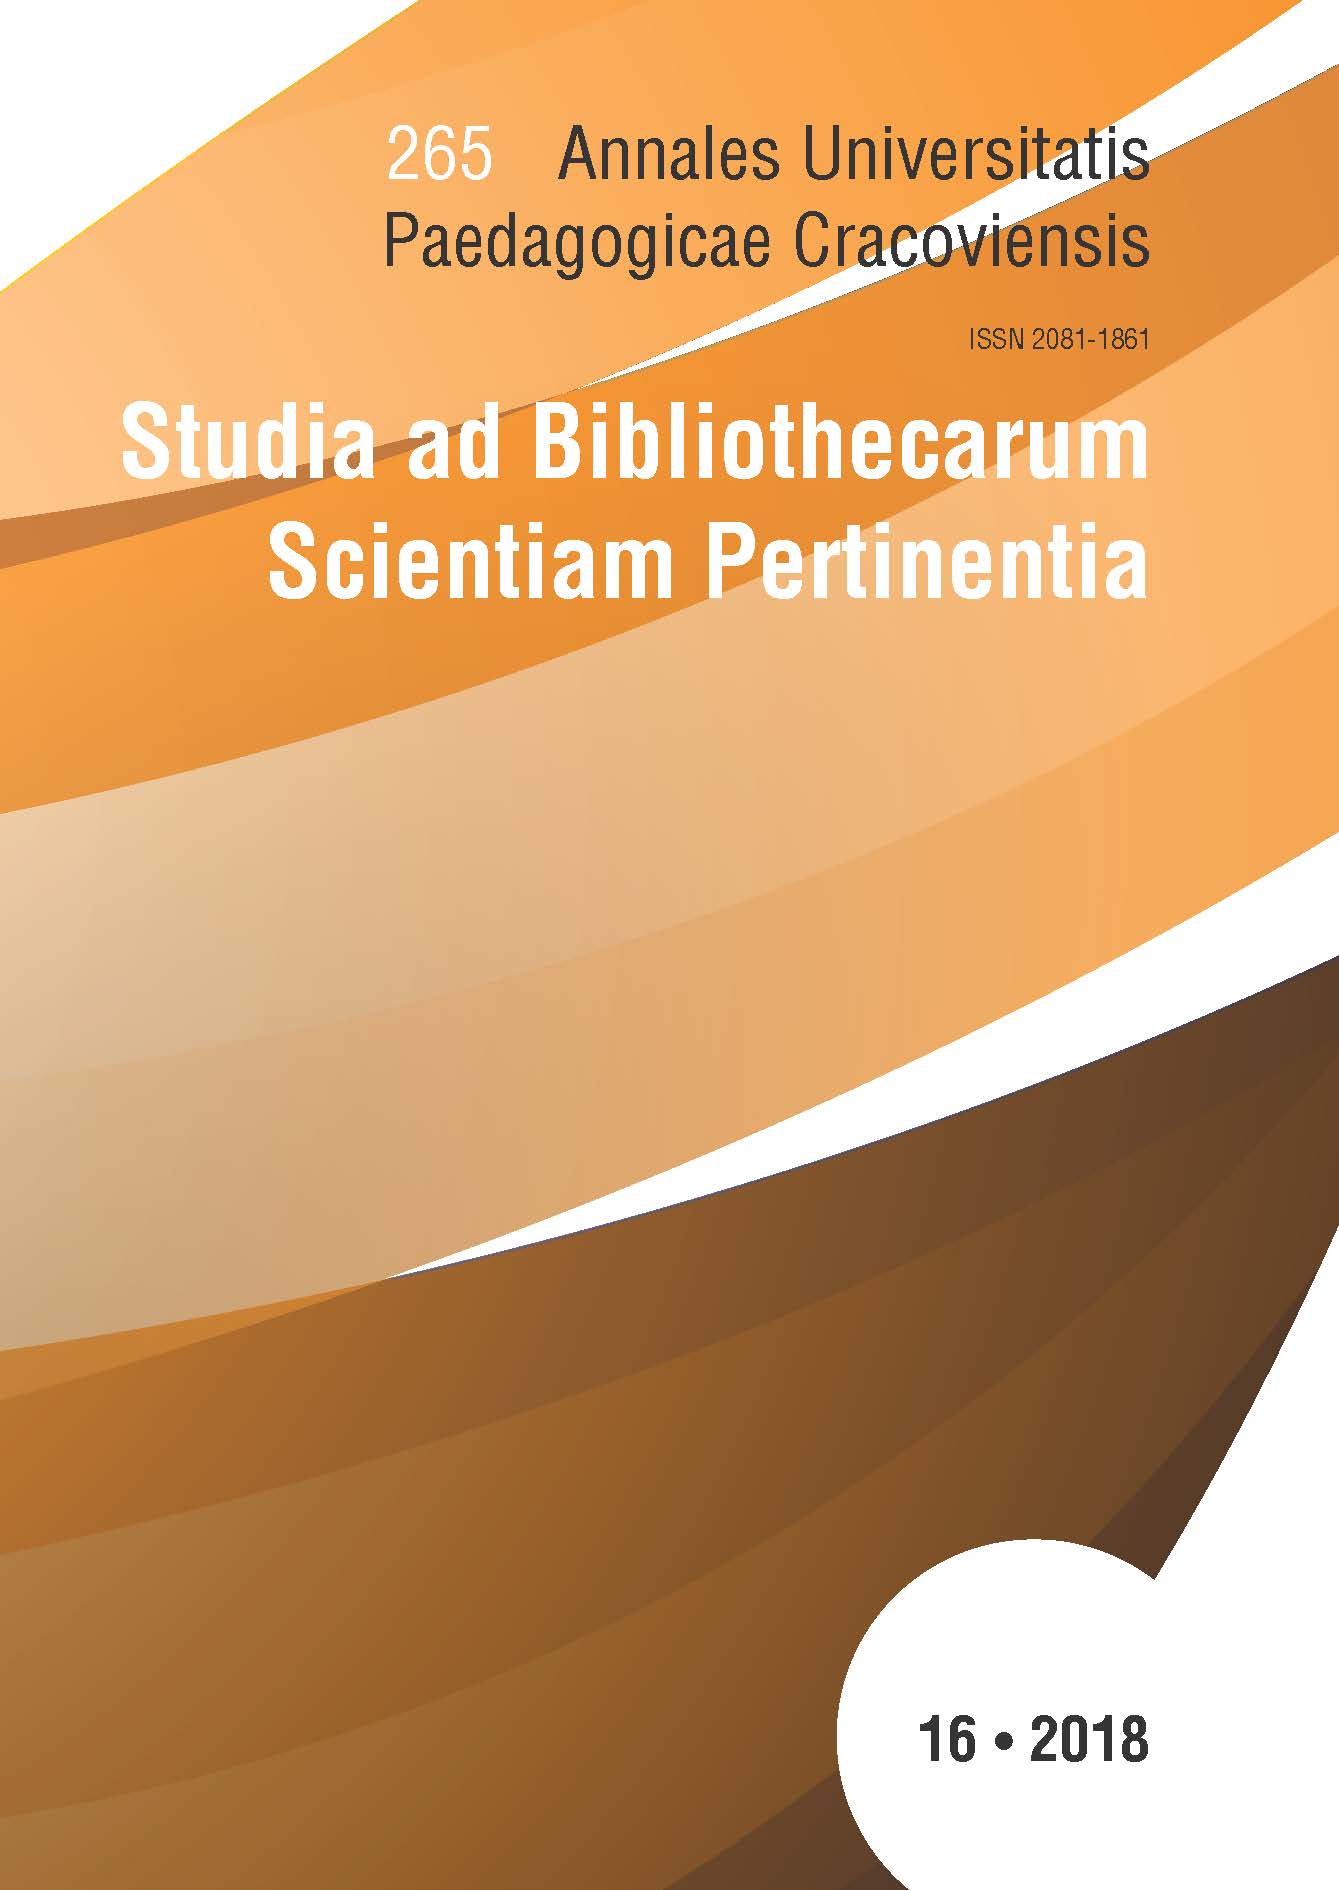 Annales Universitatis Paedagogicae Cracoviensis | Studia ad Bibliothecarum Scientiam Pertinentia